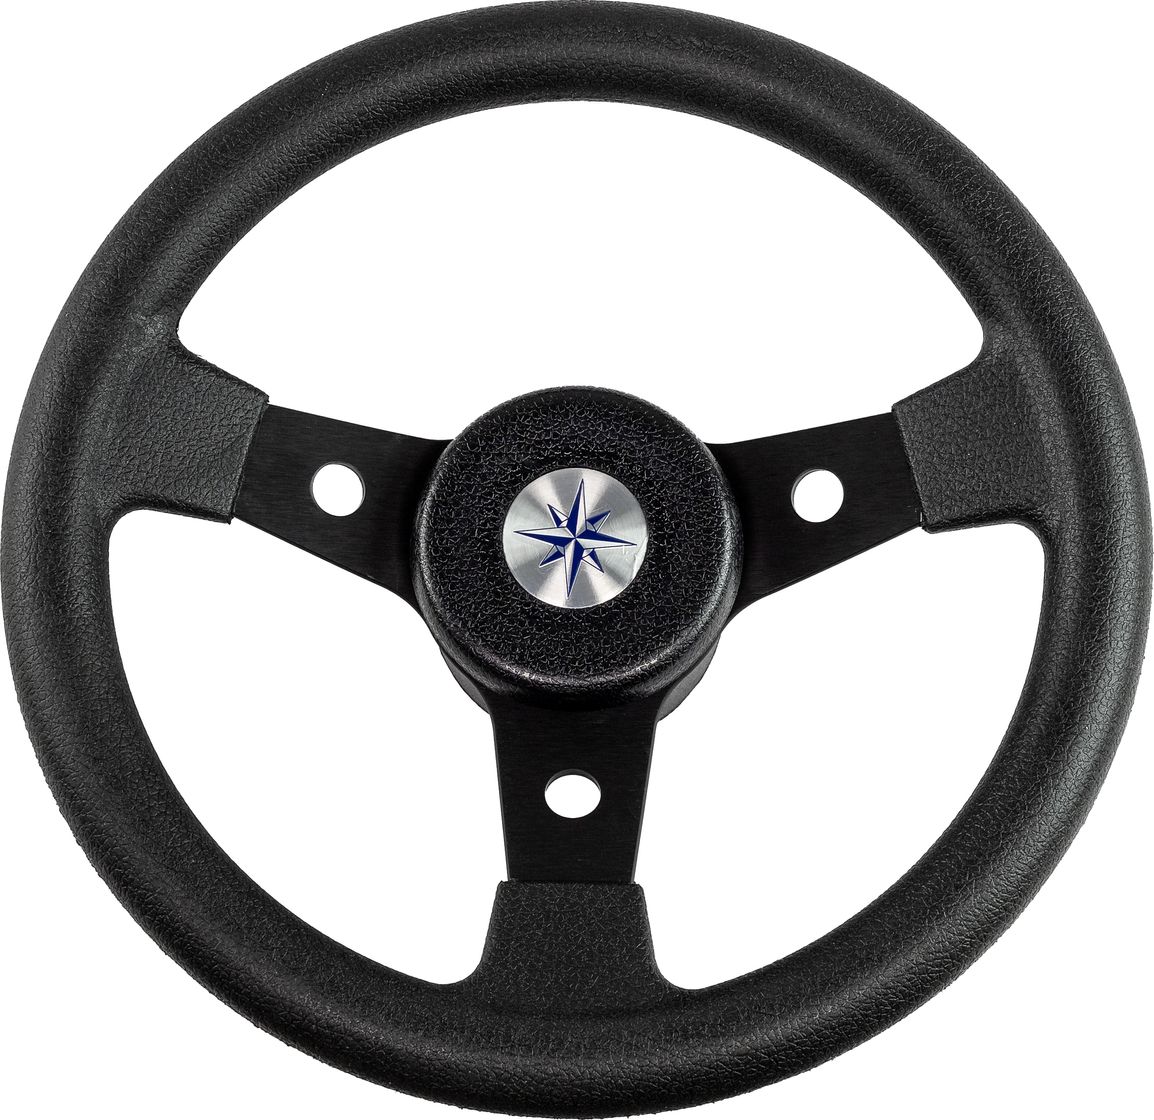 Рулевое колесо DELFINO обод и спицы черные д. 310 мм VN70104-01 рулевое колесо e chance обод и спицы черные д 330 мм d33 ec